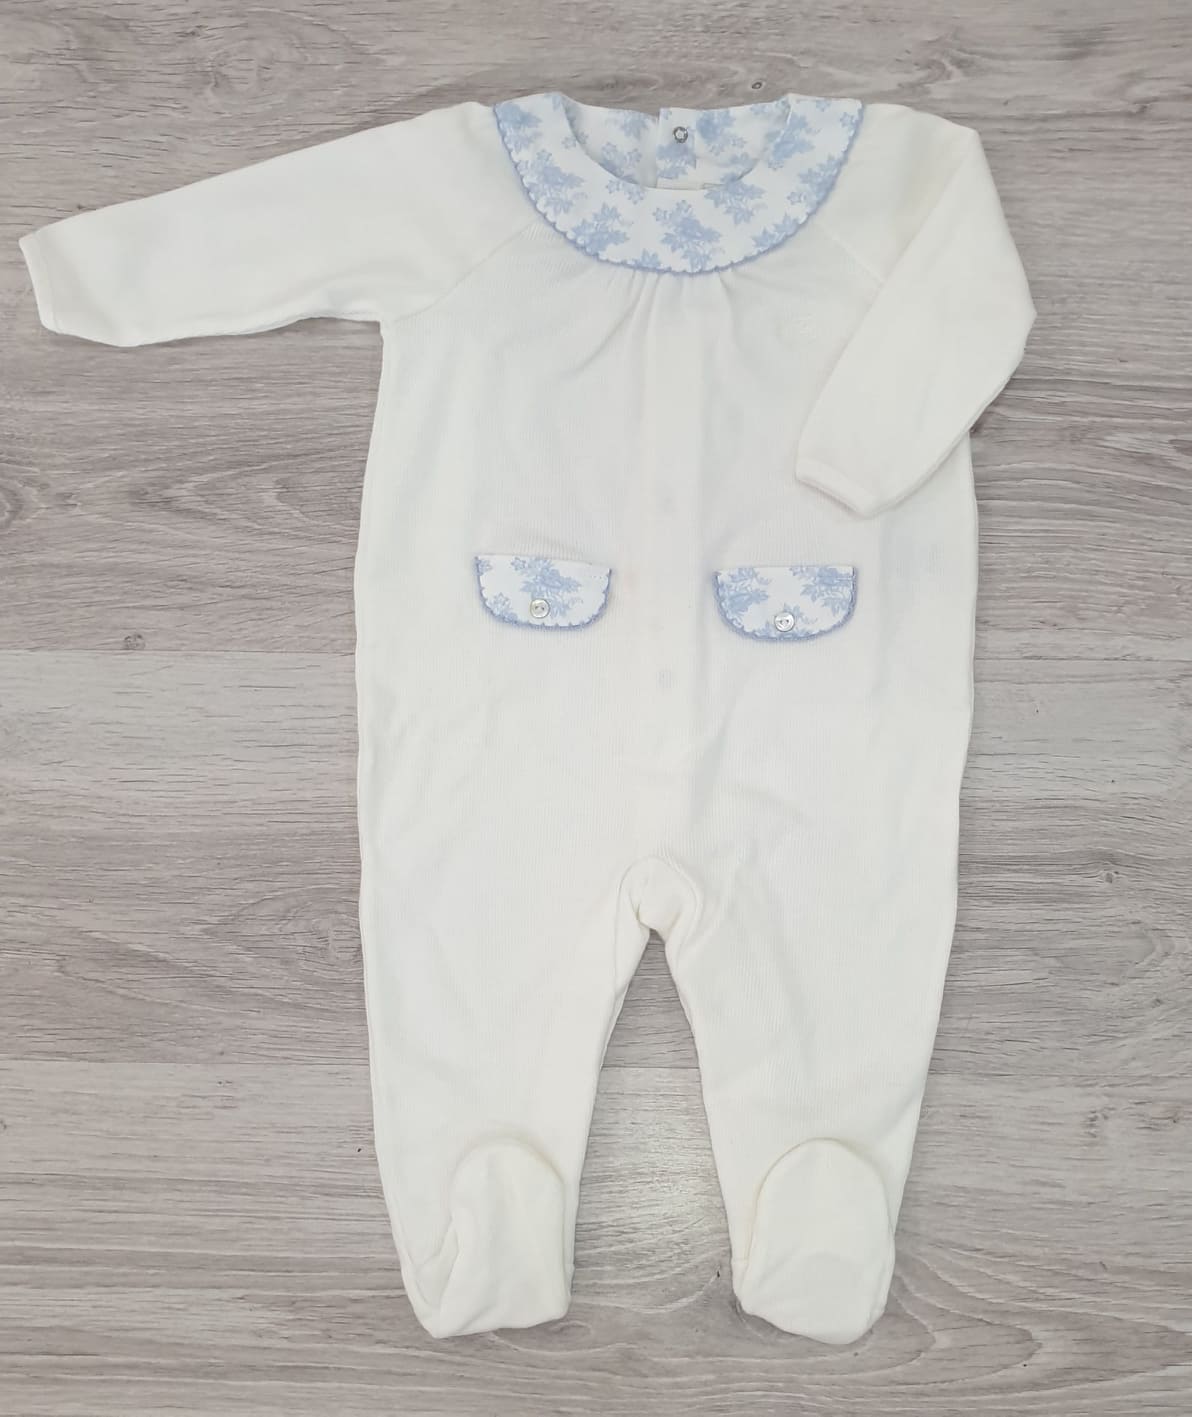 Pijamas polares para recién nacido - Invierno Rapife Baby